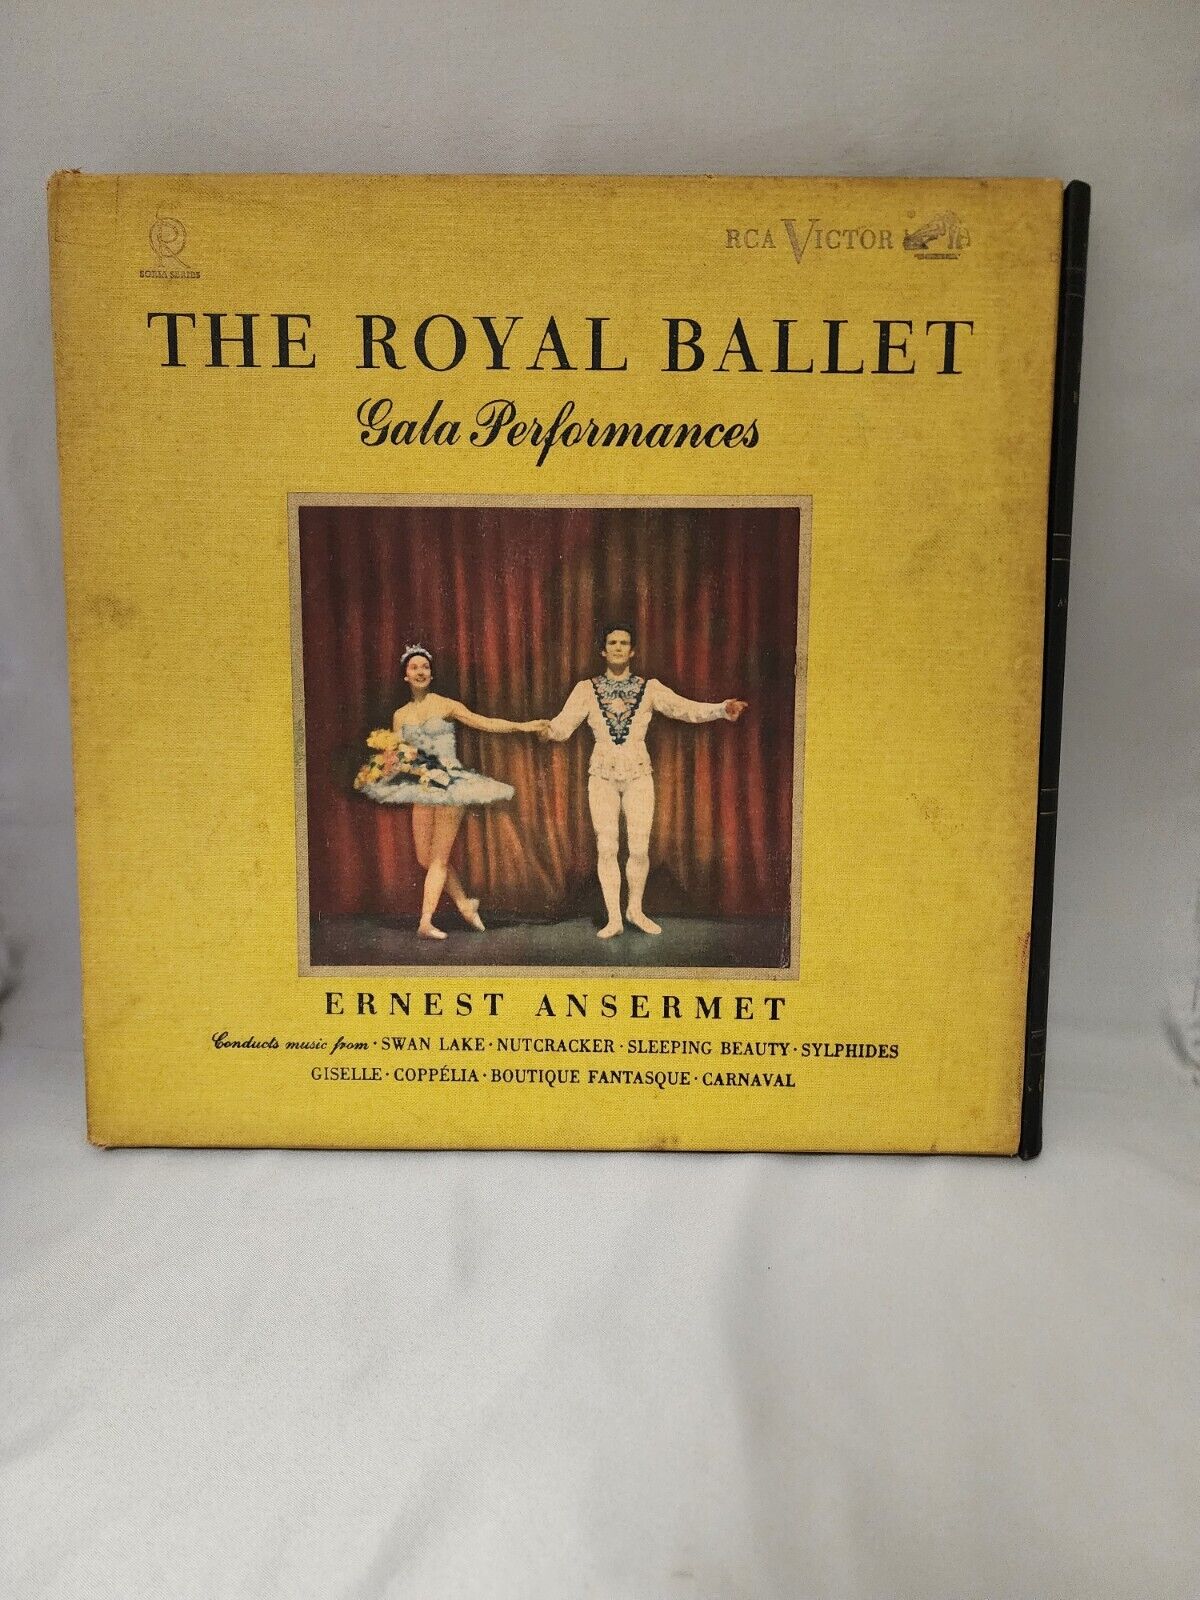 THE ROYAL BALLET GALA PERFORMANCES ERNEST ANSERMET VINYL ALBUM BOX SET